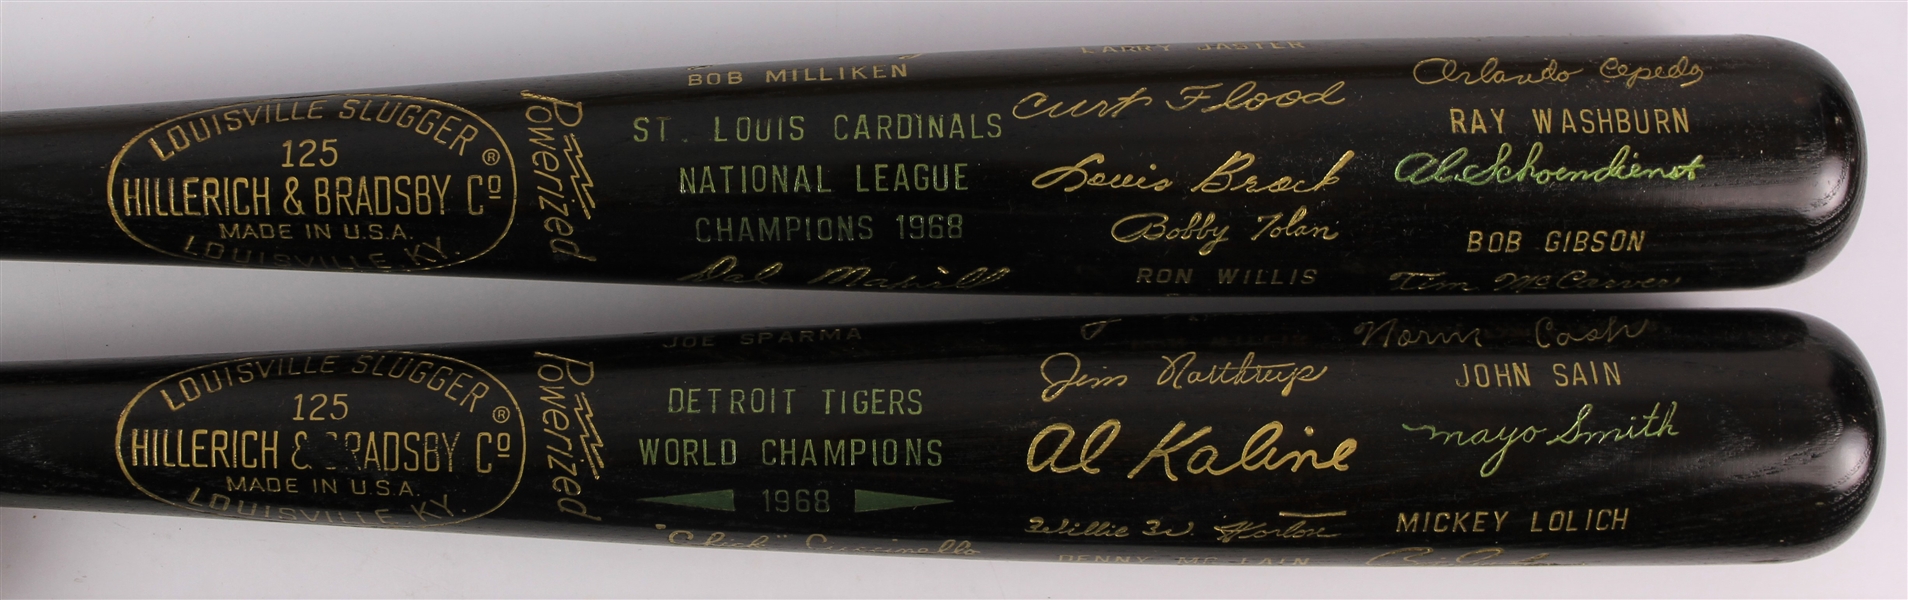 1968 Detroit Tigers St. Louis Cardinals World / National League Champions H&B Louisville Slugger Commemorative Black Bats - Lot of 2 (MEARS LOA)